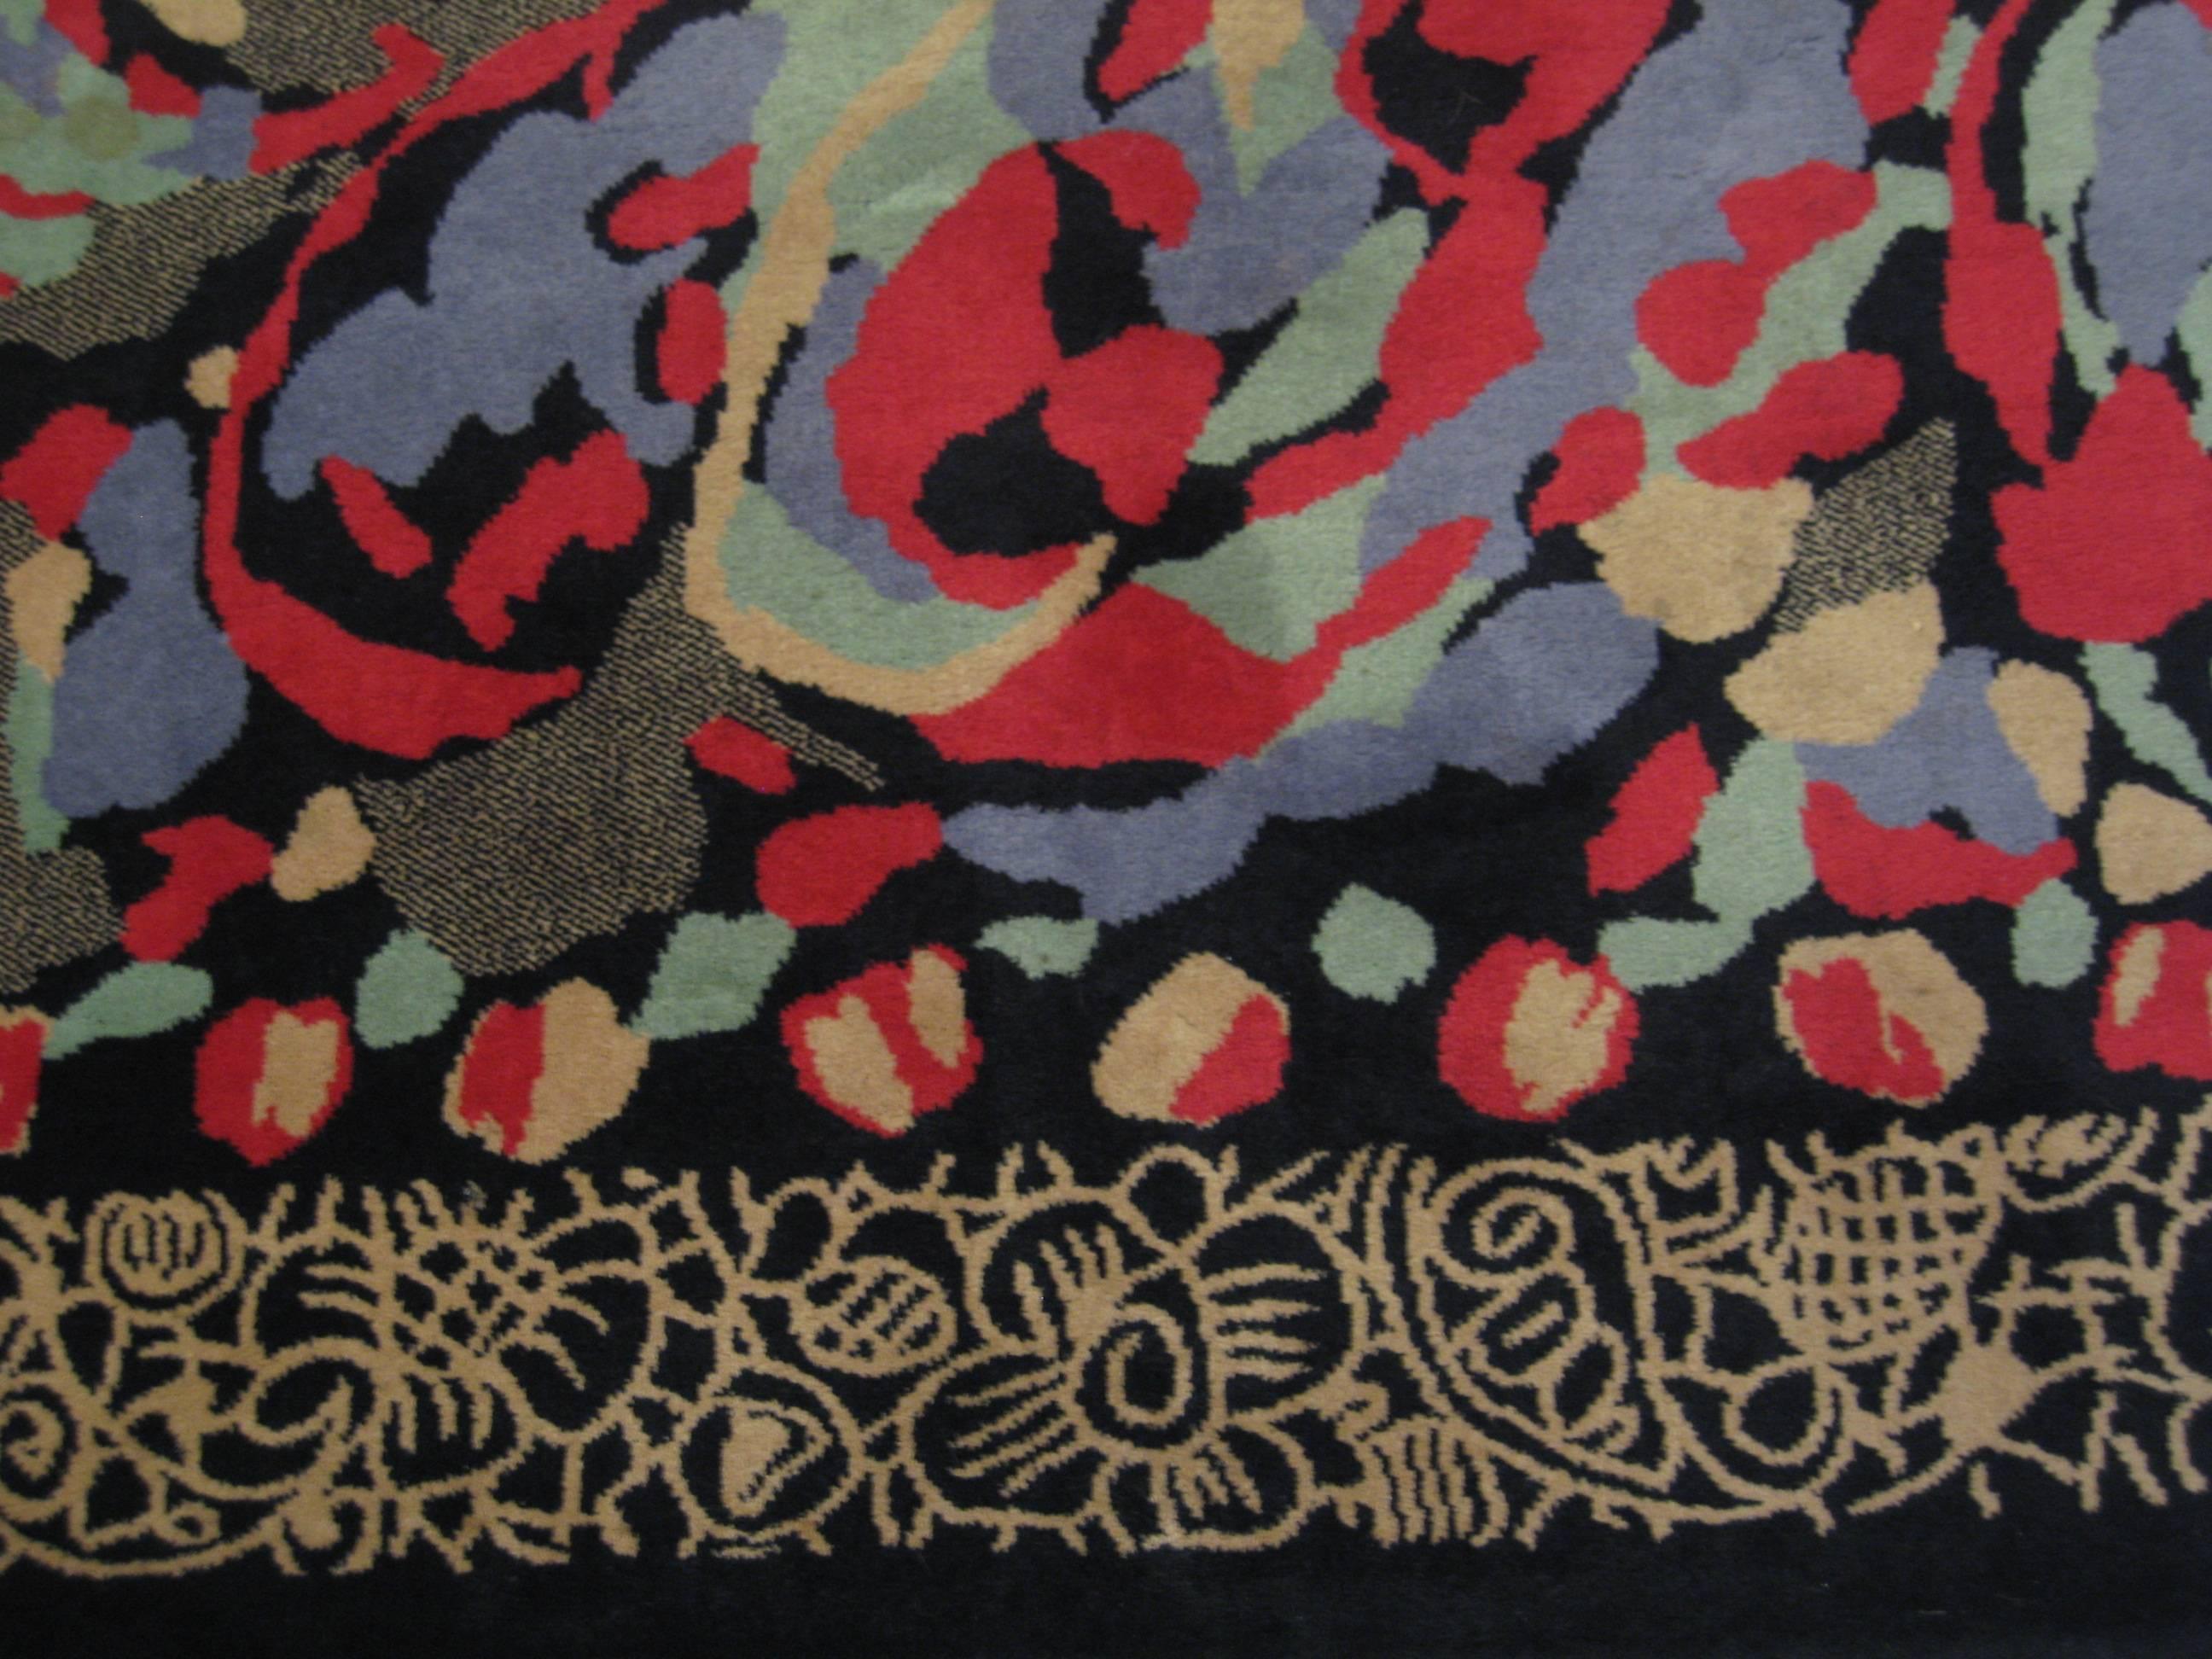 Un tapis de laine moderniste conçu par Pierre Balmain.
Composé d'un fond noir et d'une bordure décorative de couleur havane.
entourant la composition centrale du tapis dans des Hughes de couleur rouge, bleue, verte et beige.
Label d'origine :